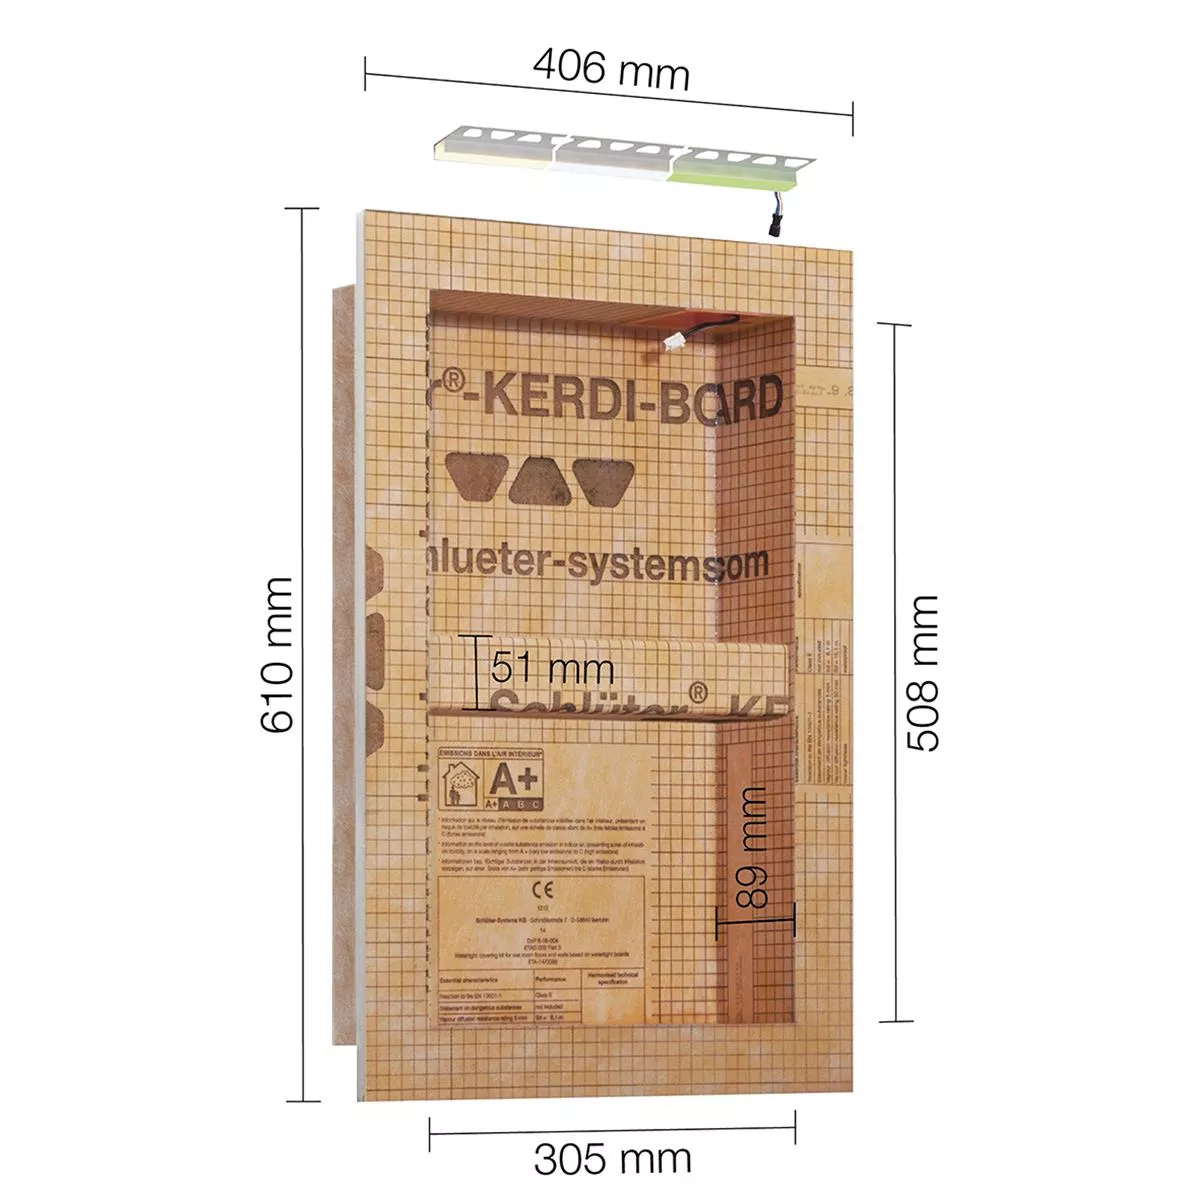 Schlüter Kerdi Board NLT niche készlet LED világítás RGB 30,5x50,8x0,89 cm